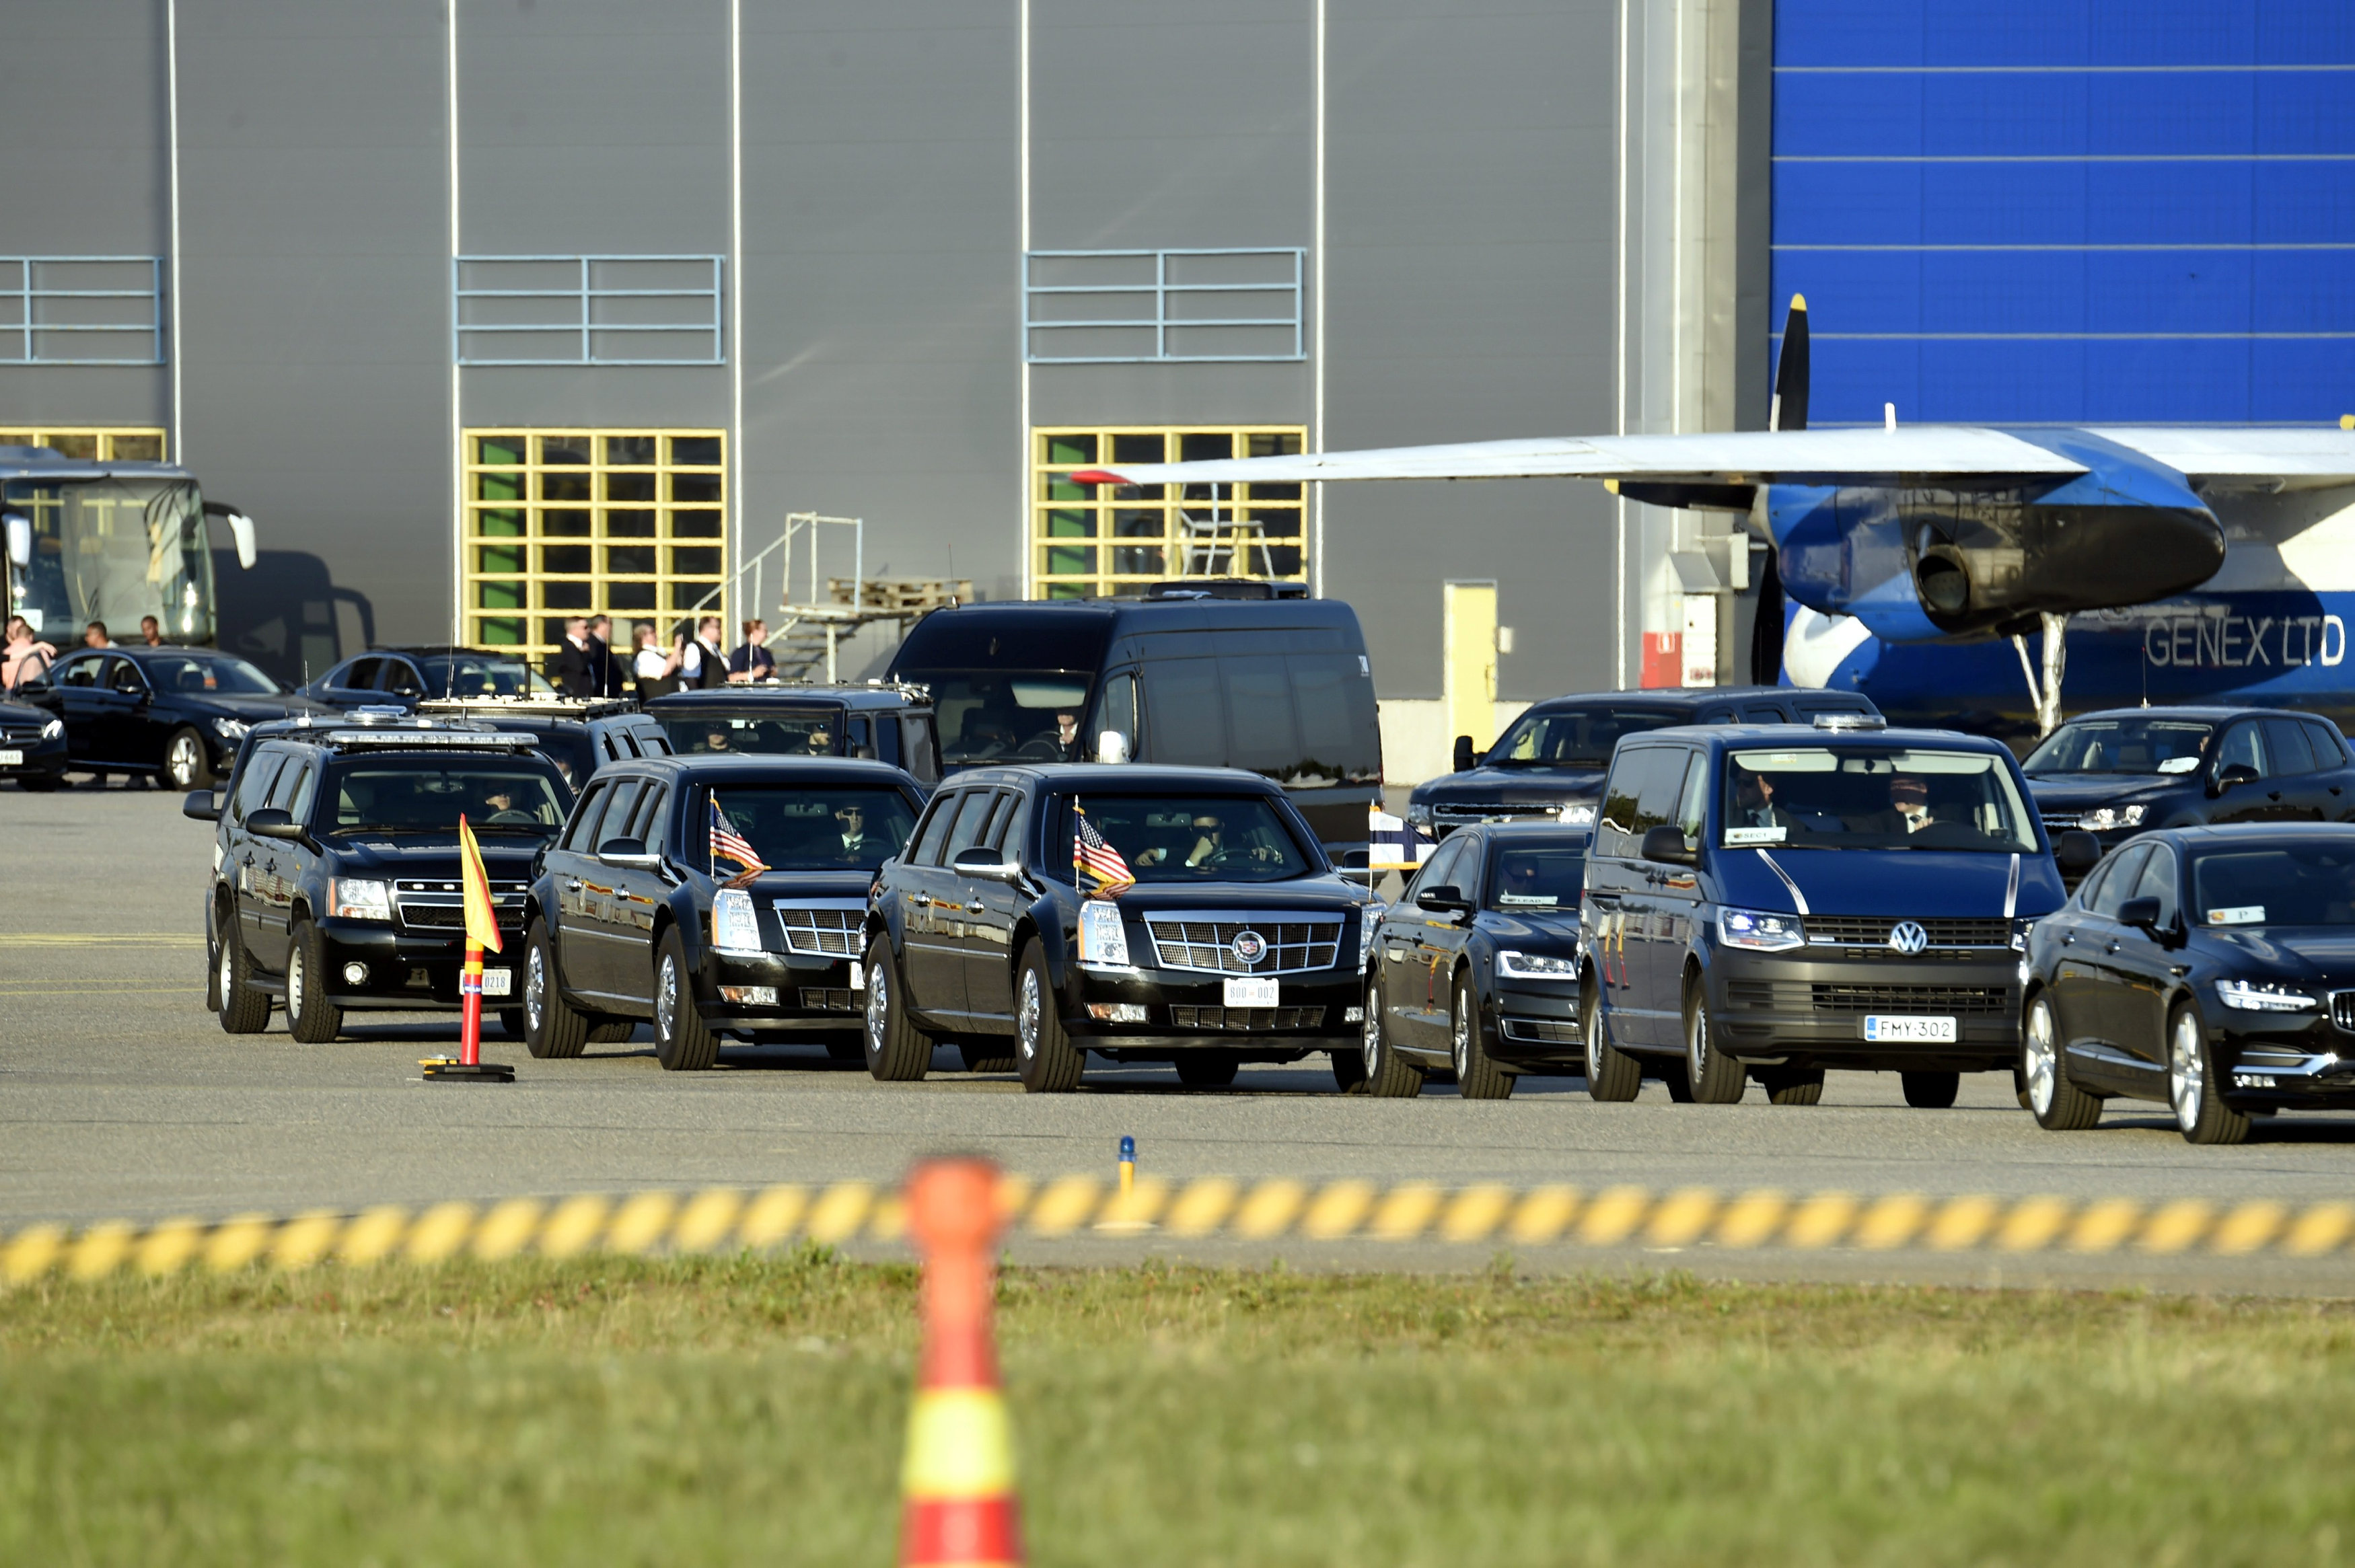 موكب رسمي ينتظر وصول الرئيس الأميركي دونالد ترامب إلى مطار هلسنكي الدولي في فينا، 15 يوليو 2018. رويترز 